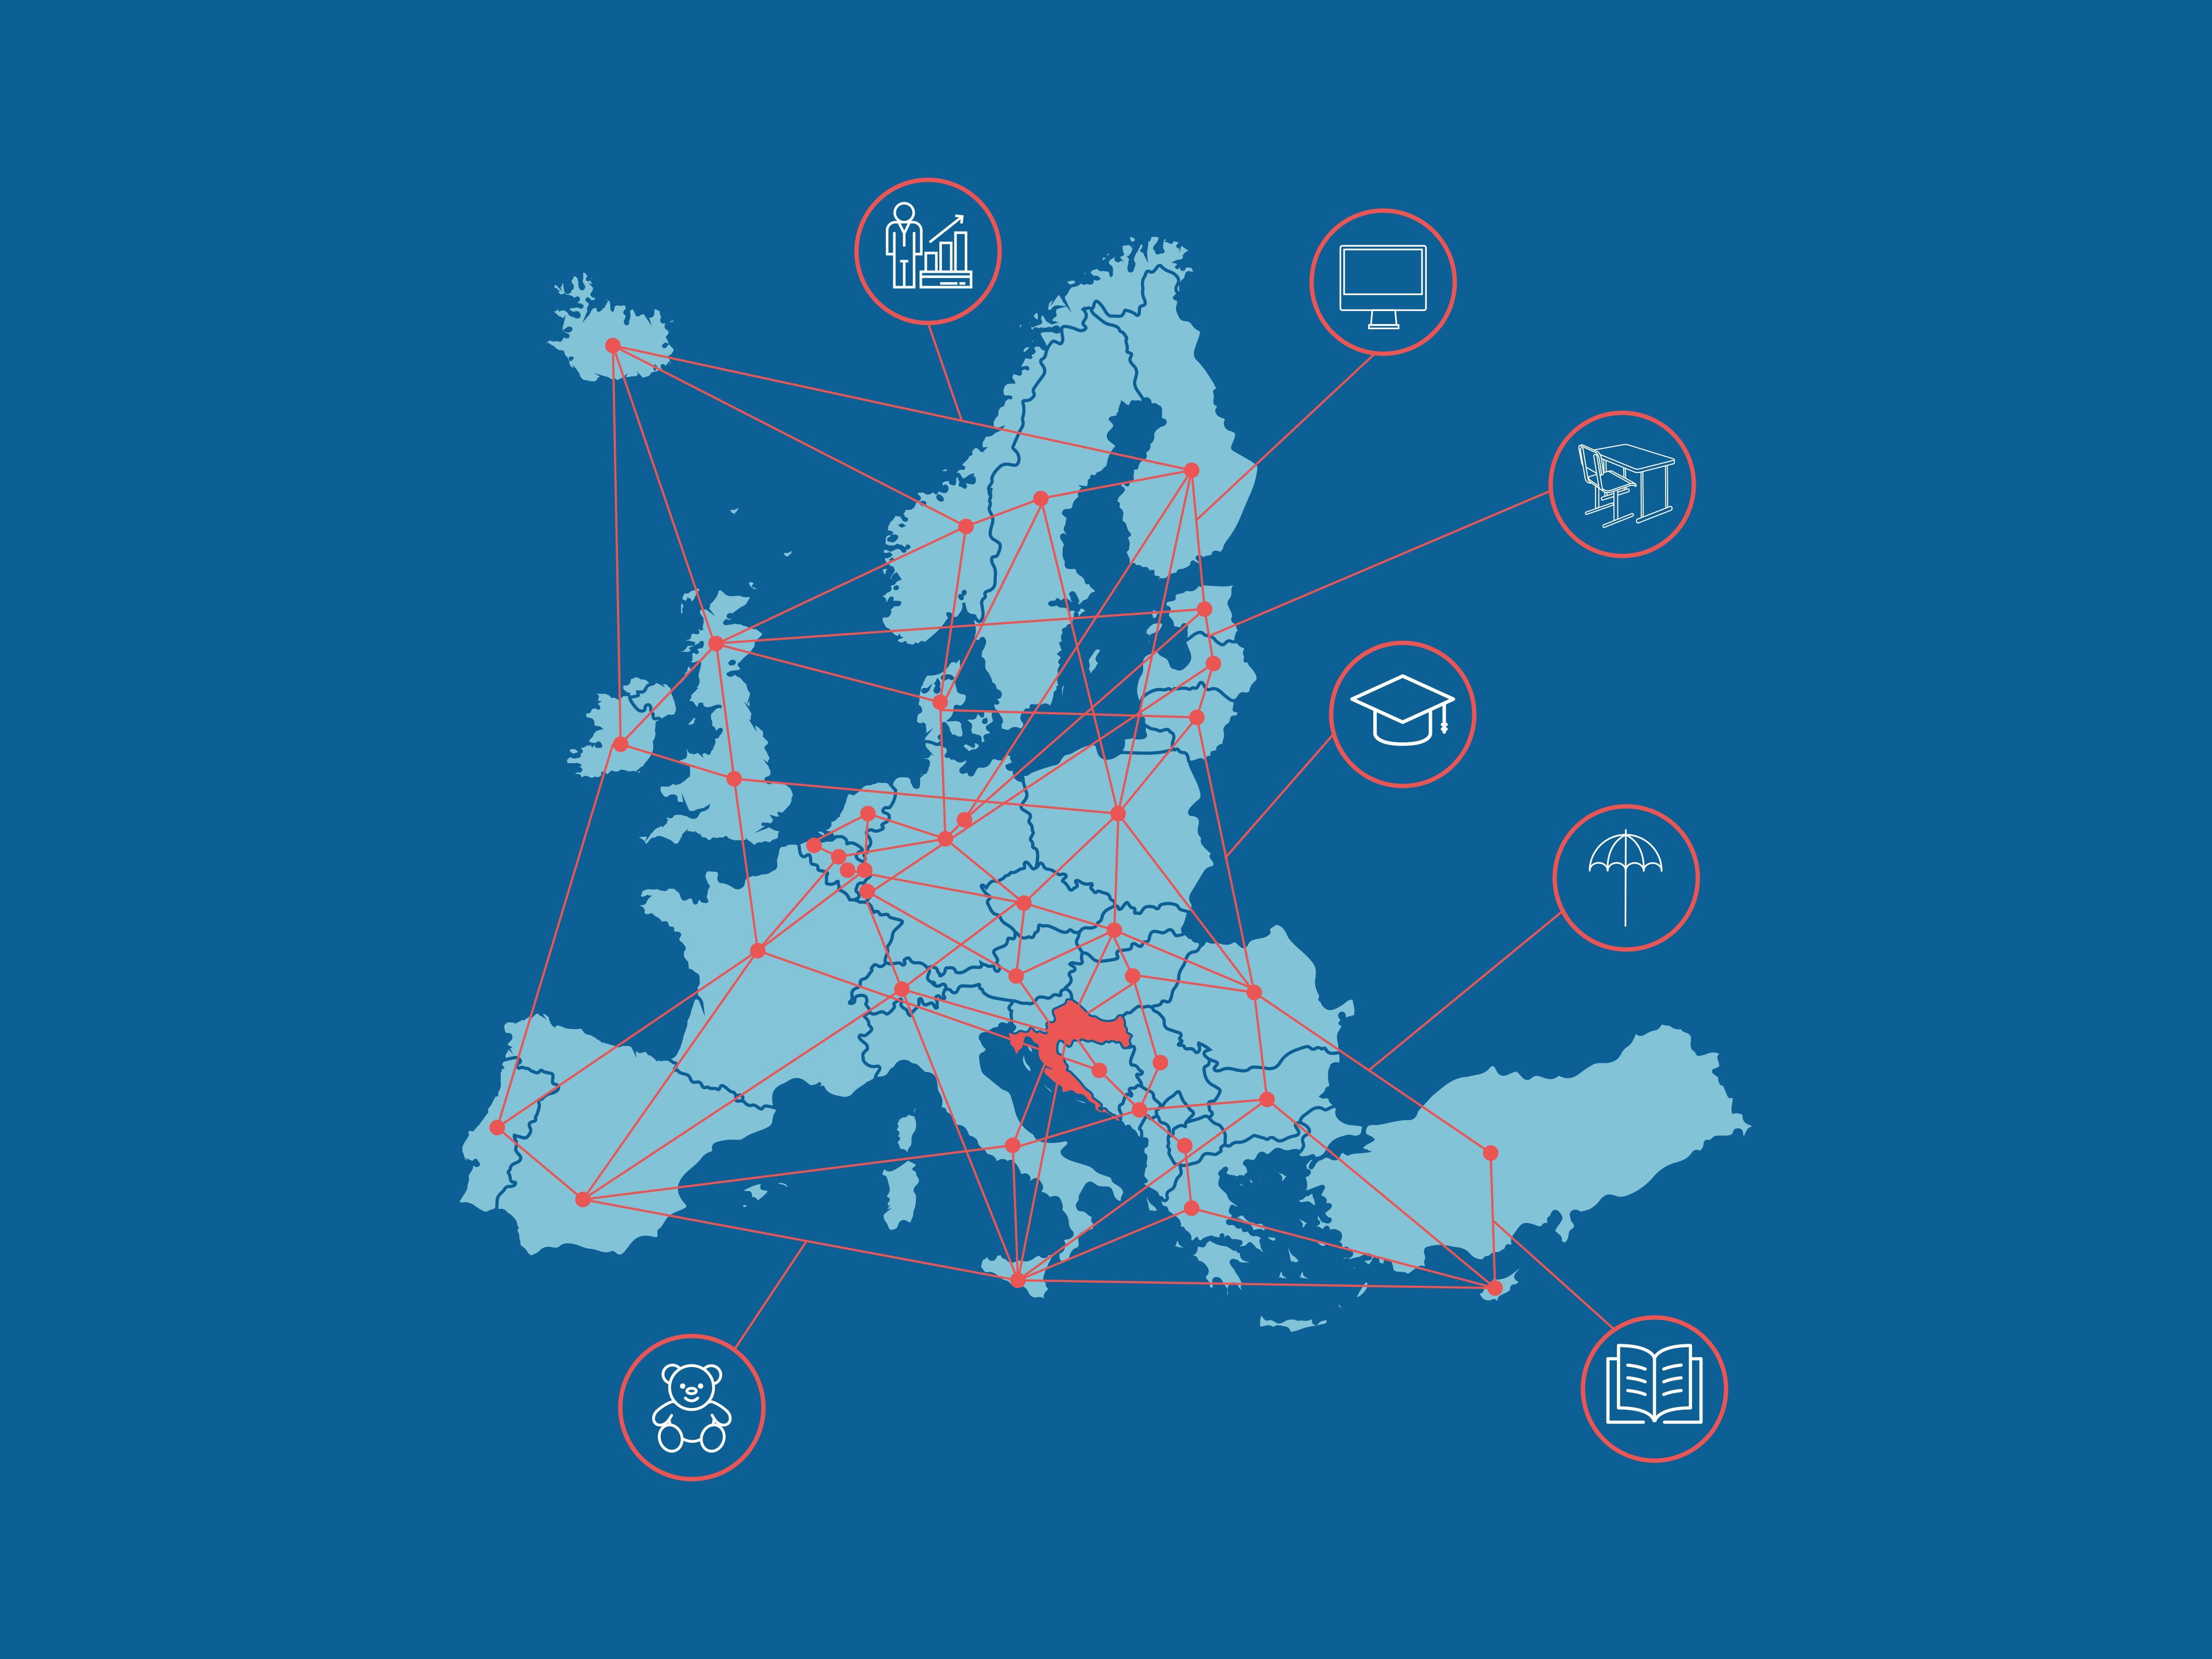 Karta Europe s poveznicama na mrežu Eurydice, namijenjenu razmjeni informacija o obrazovnim sustavima u 37 europskih zemalja